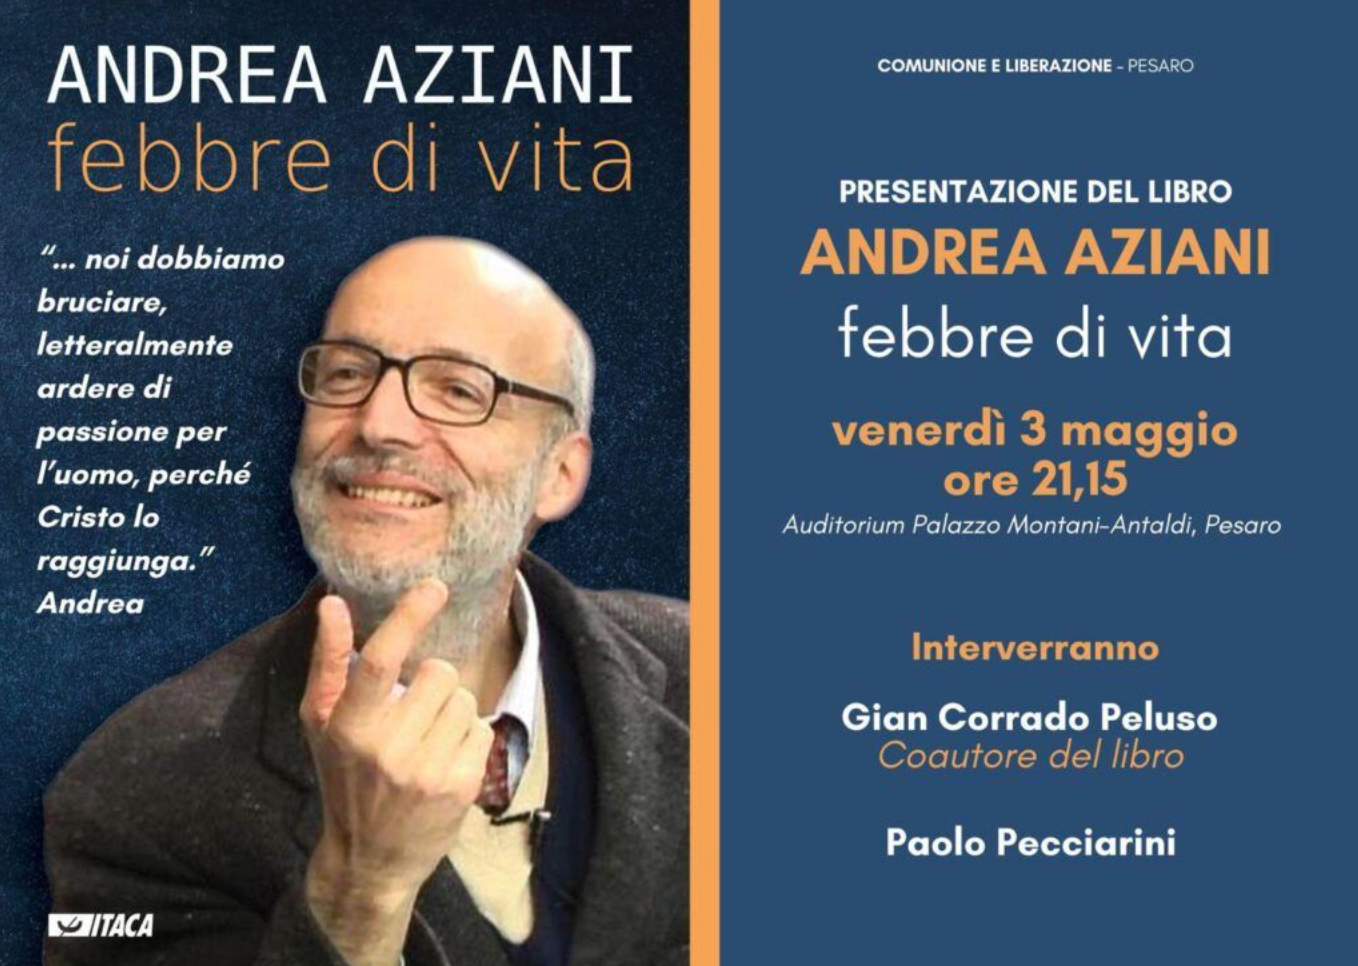 Featured image for “Pesaro: Presentazione del libro, Andrea Aziani febbre di vita”